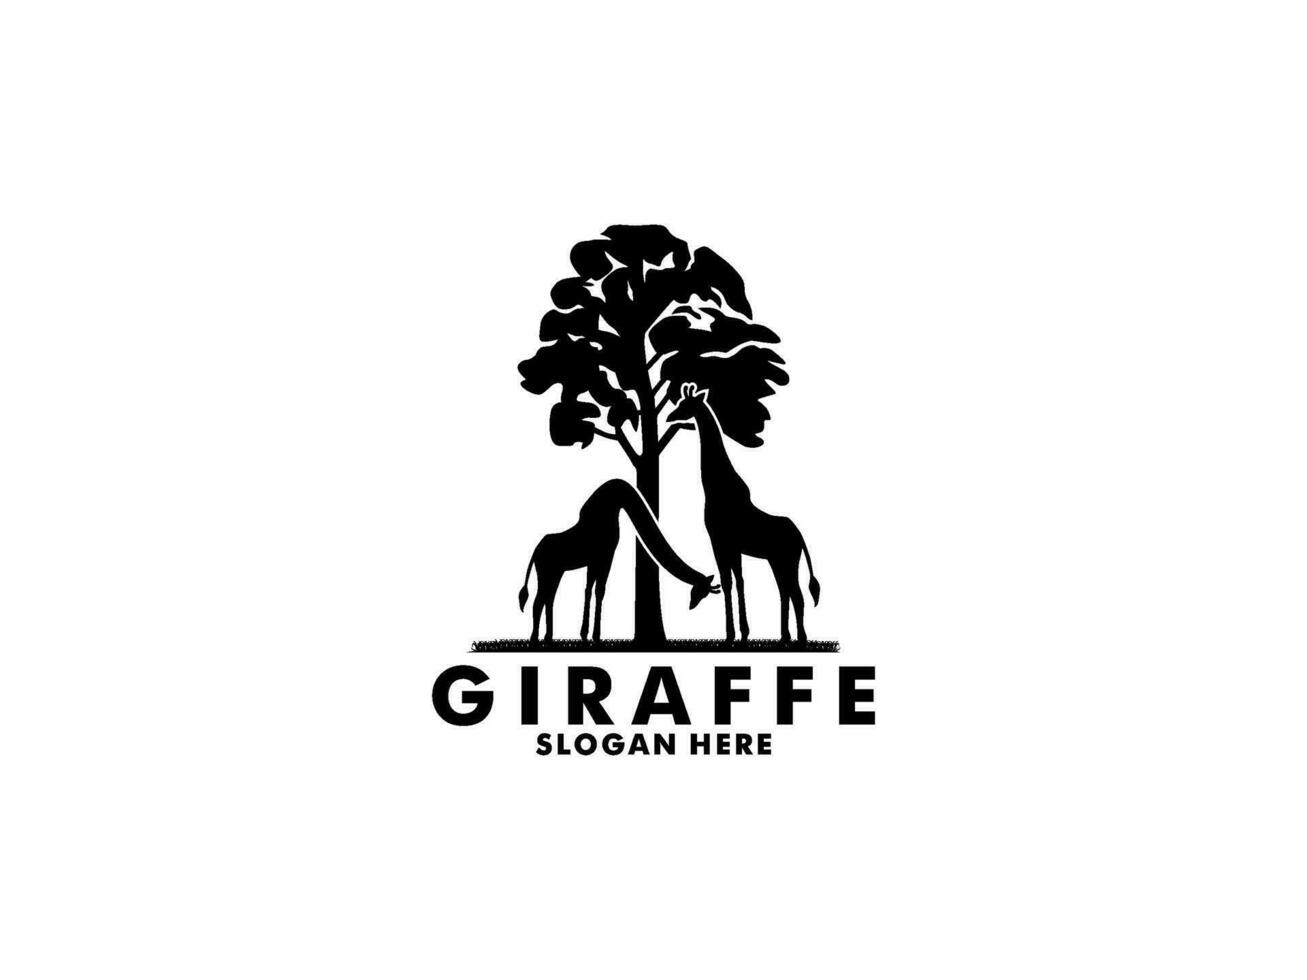 Giraffe logo vector, Giraffe silhouette logo design template vector